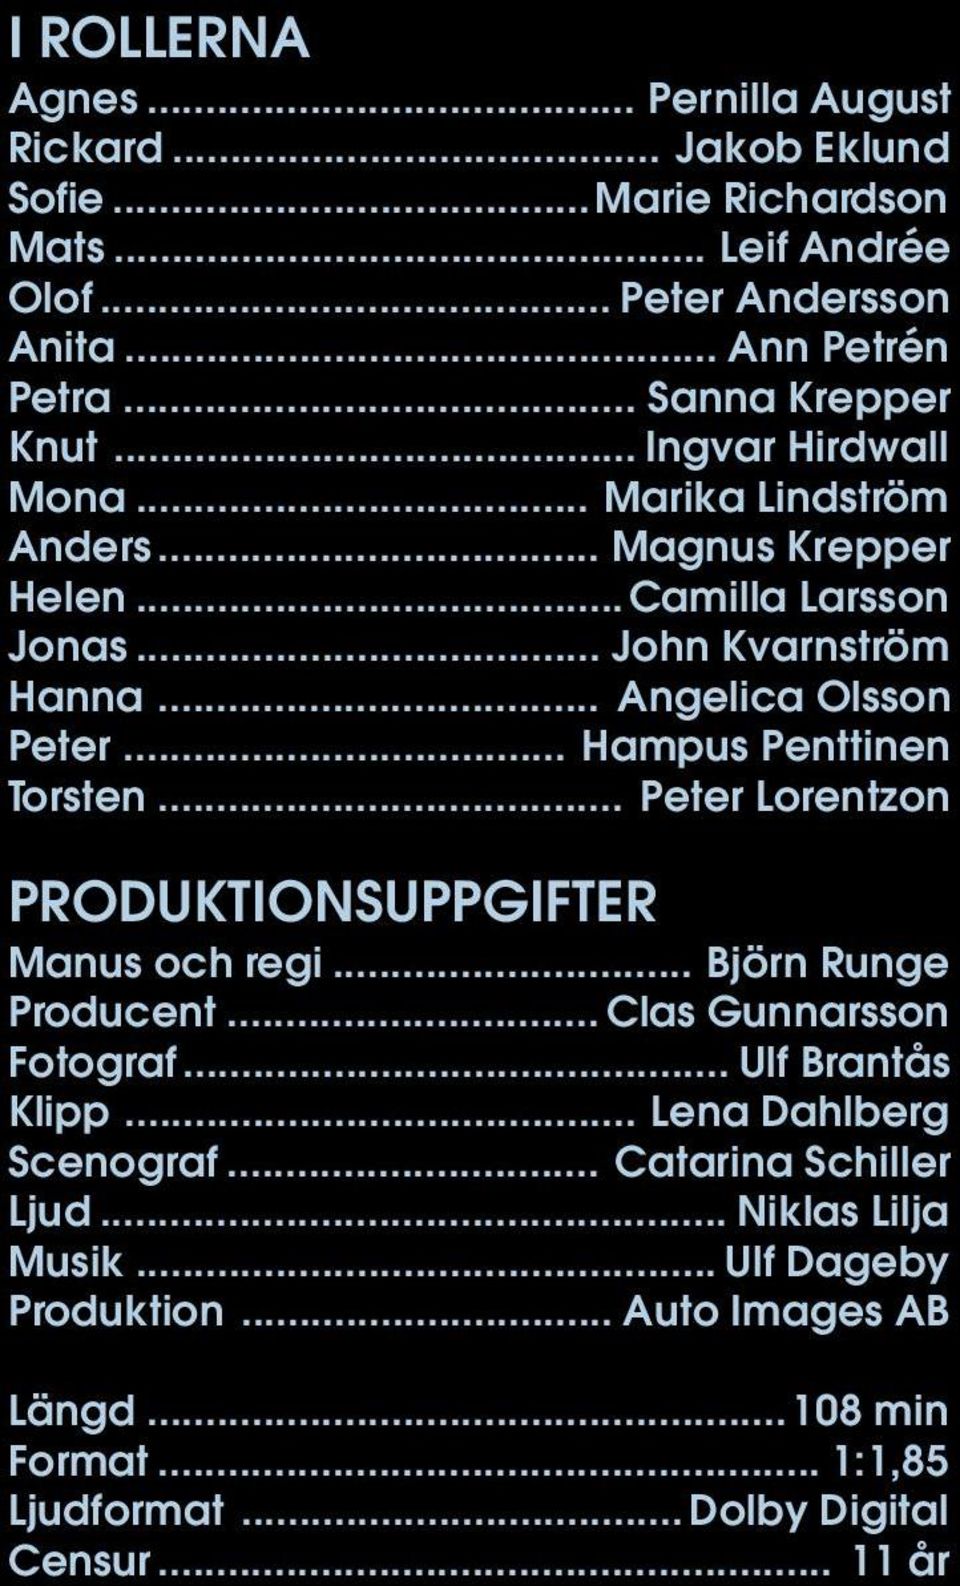 .. Hampus Penttinen Torsten... Peter Lorentzon PRODUKTIONSUPPGIFTER Manus och regi... Björn Runge Producent... Clas Gunnarsson Fotograf... Ulf Brantås Klipp.